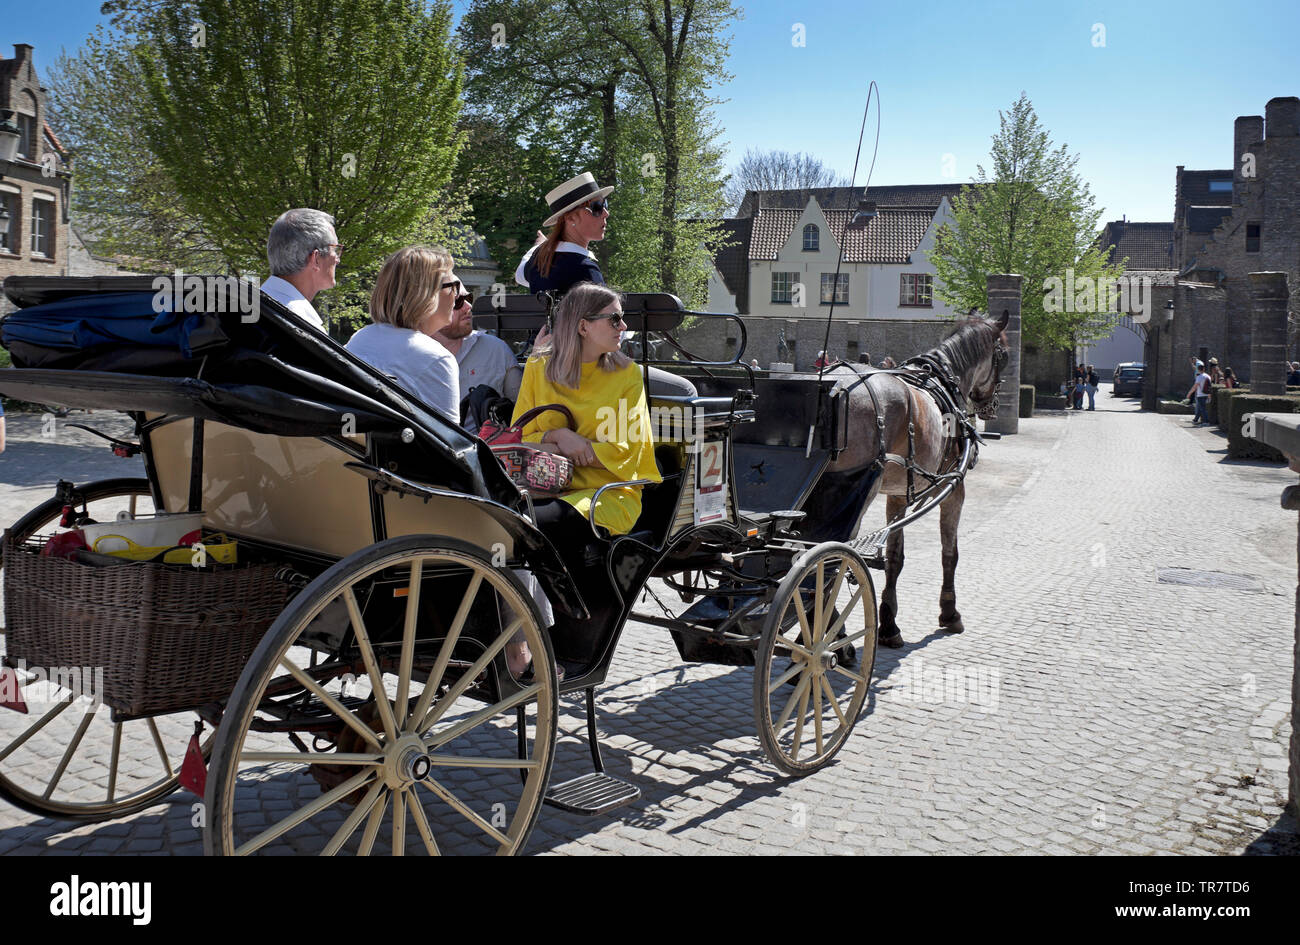 Pferd und Wagen, Stadtzentrum sightseeing tour, Brügge, Belgien, Europa Stockfoto